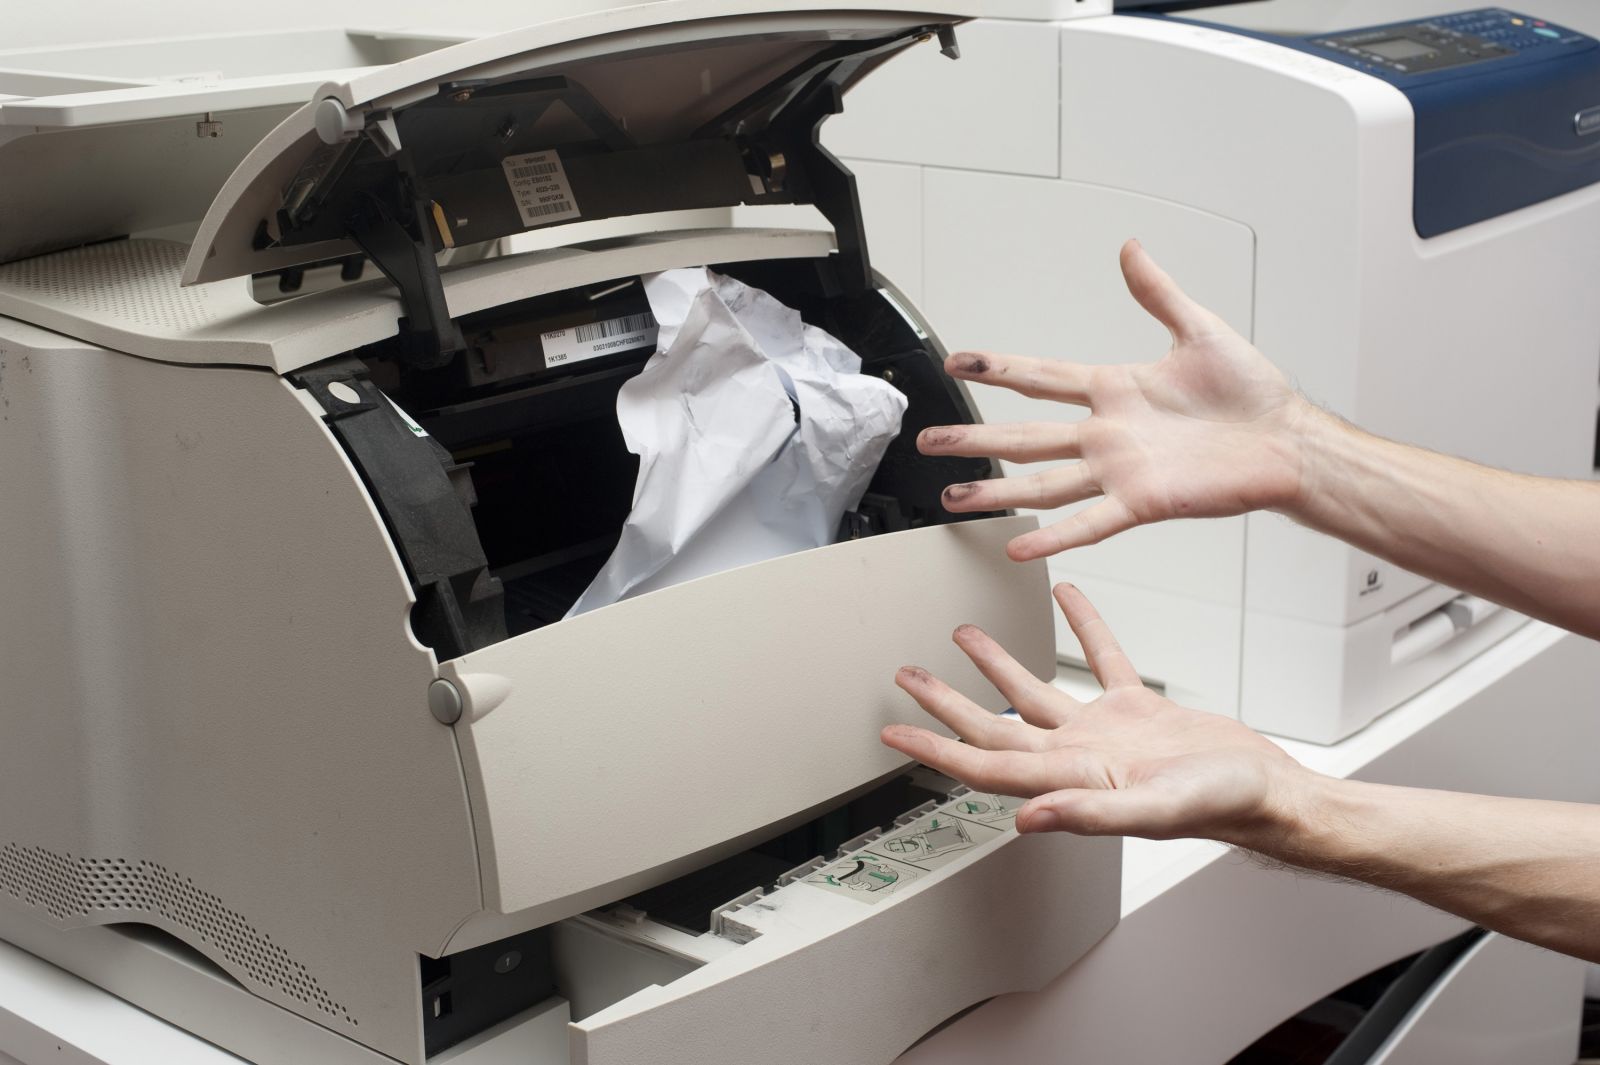 Принтер зажевывает бумагу